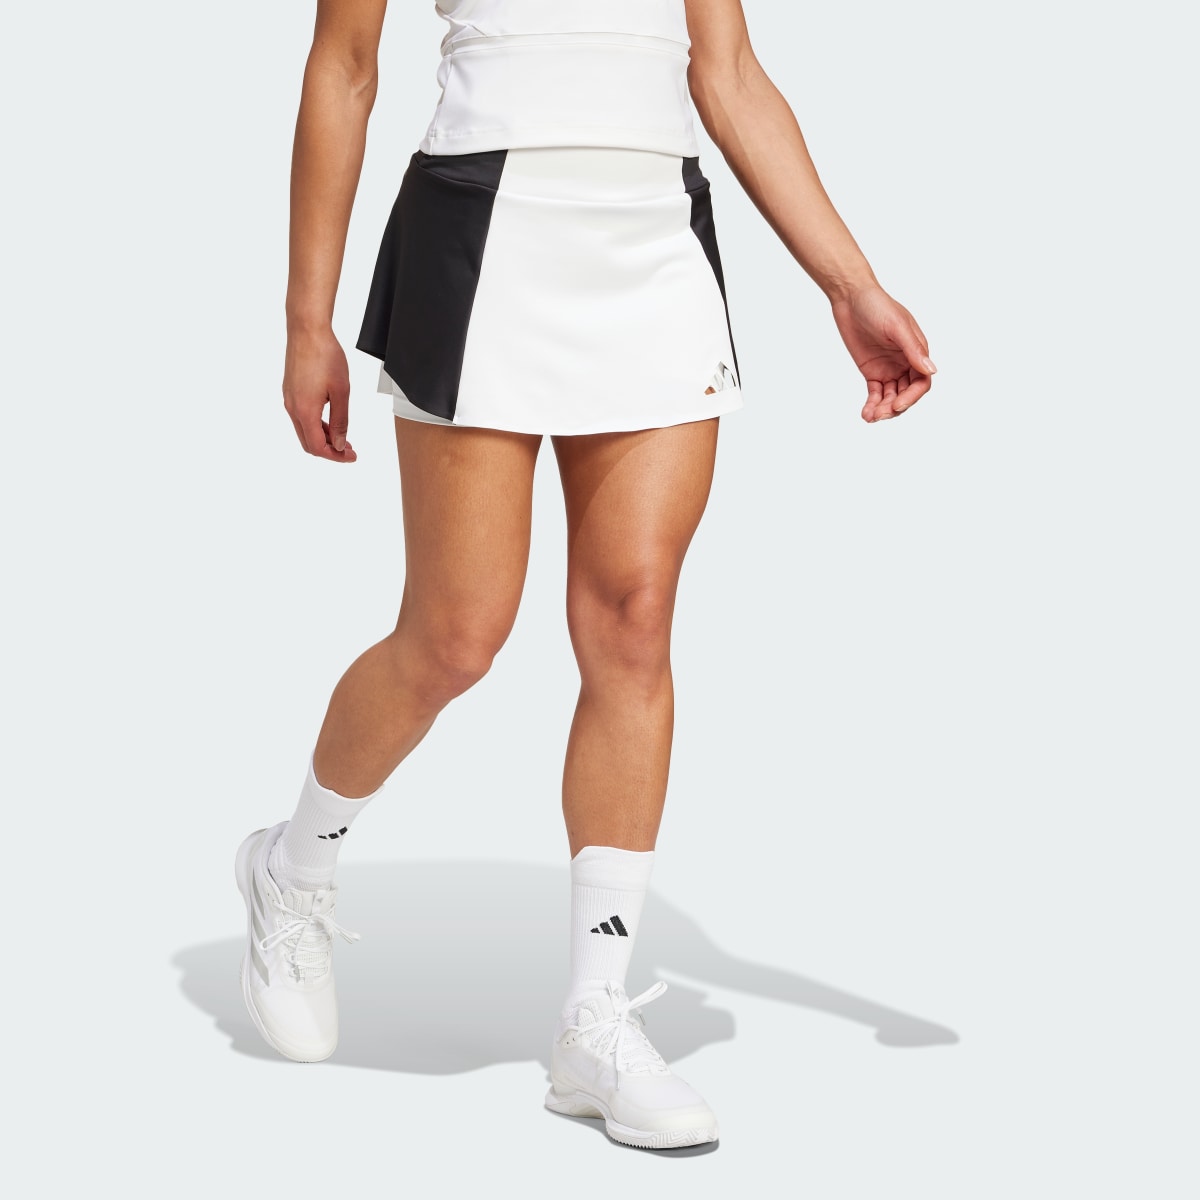 Adidas Spódnica Tennis Premium. 4